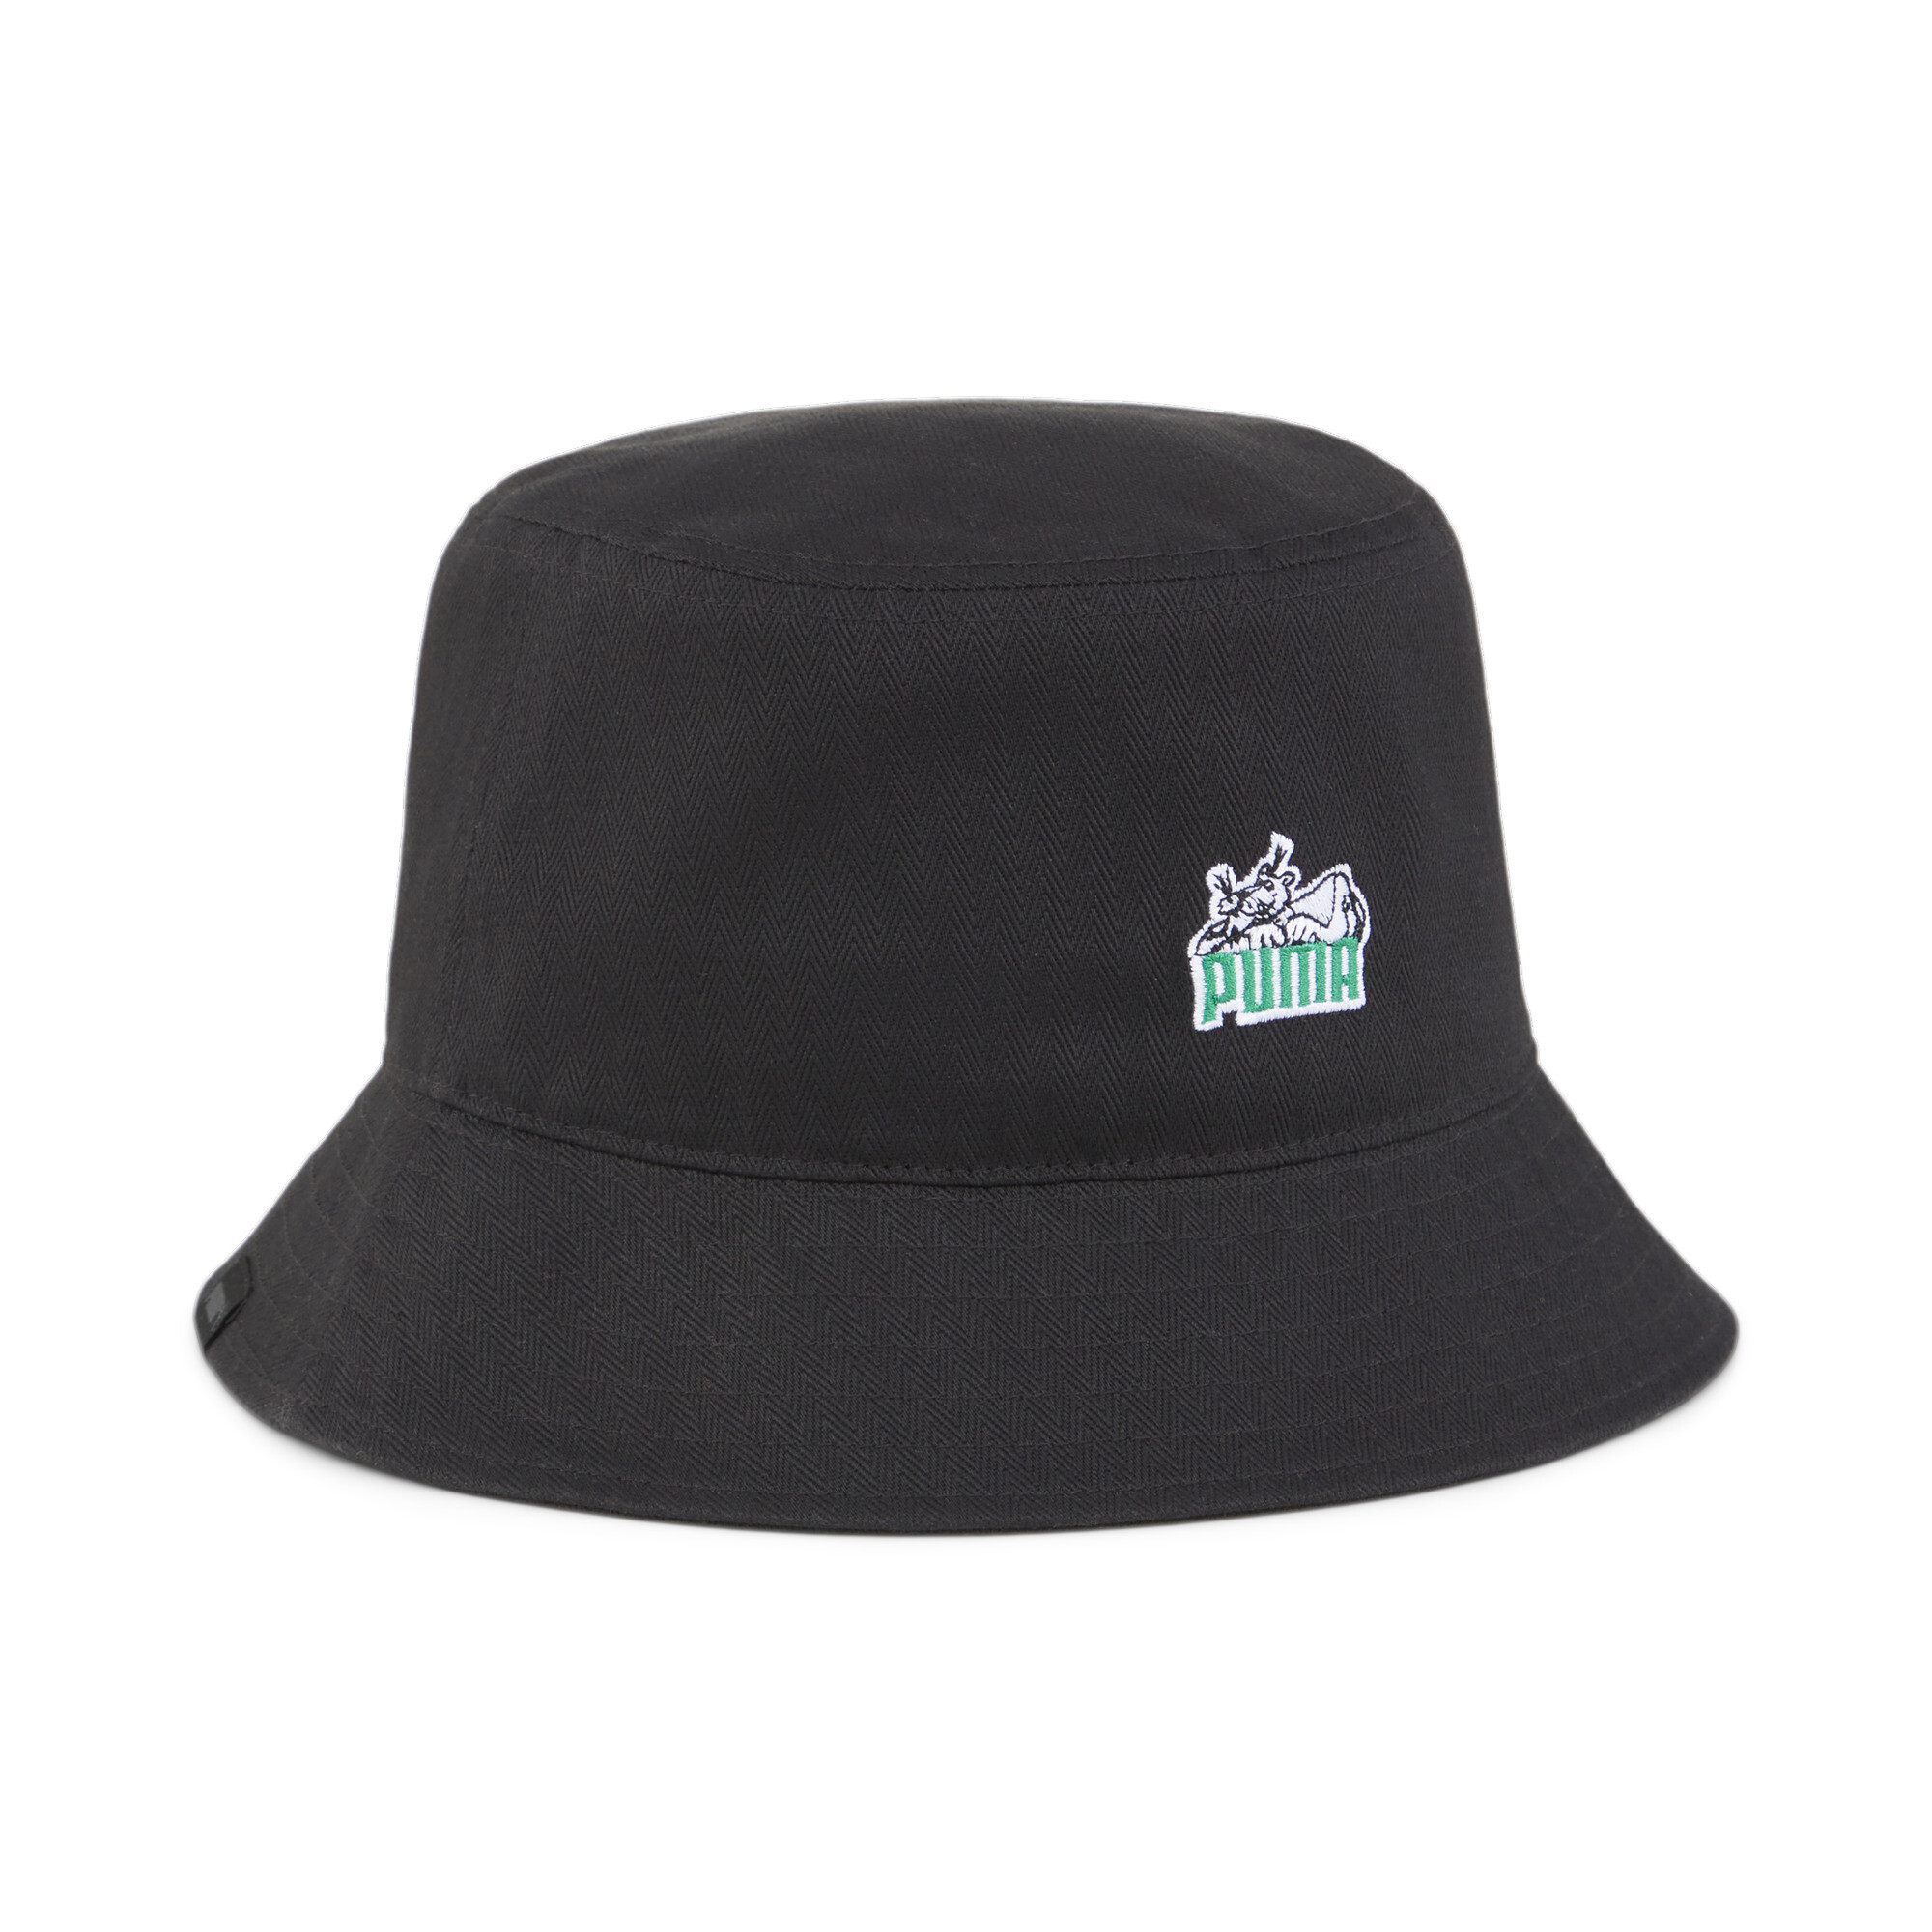 Women's Puma Skate Bucket Hat, Black, Size L/XL, Accessories